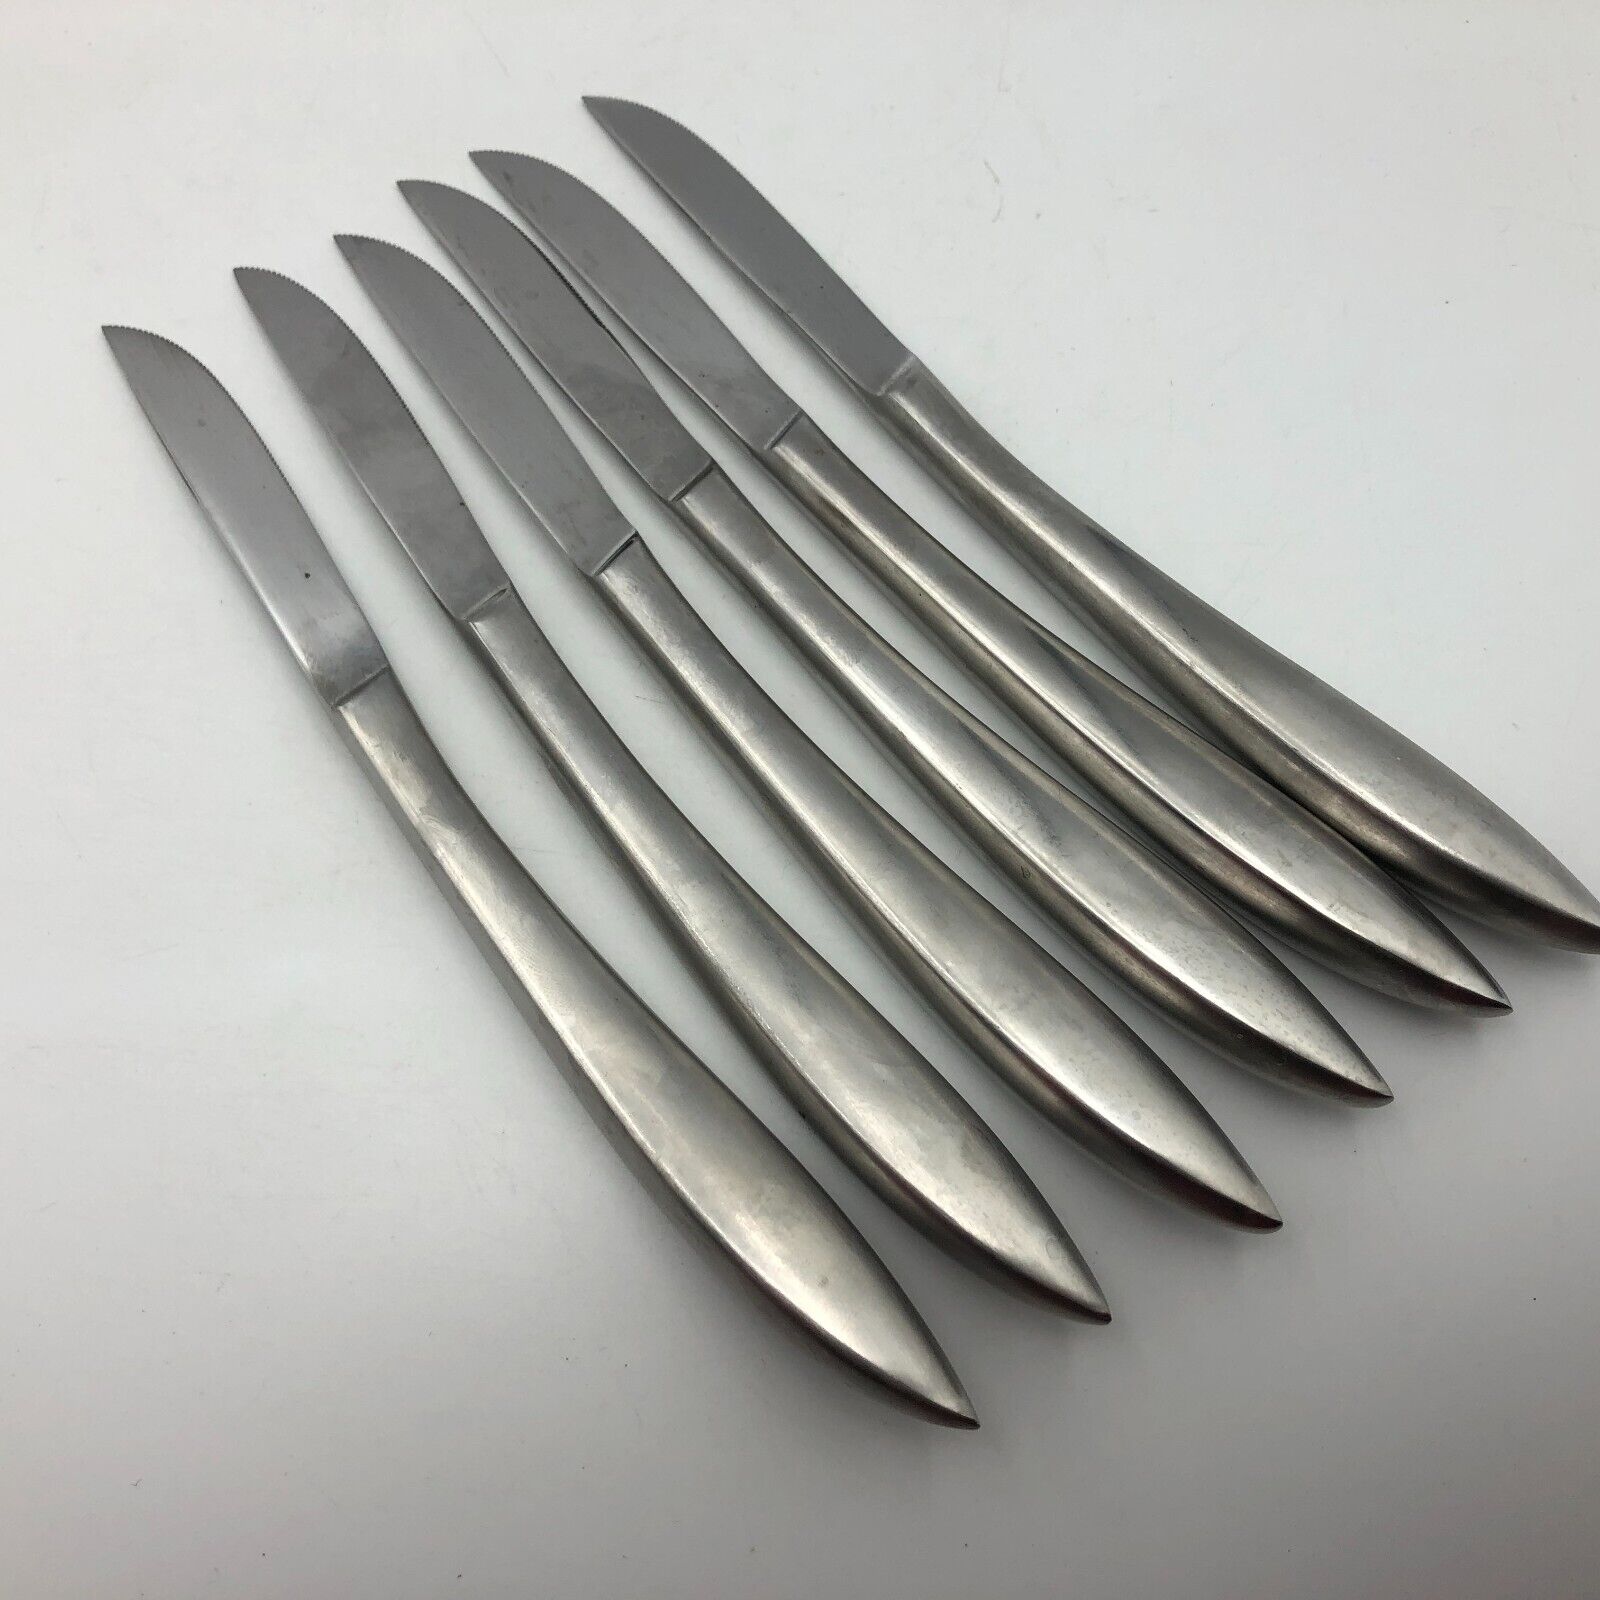 MCM Vintage Set Of 6 Serrated Knives Japan Knife Lot Curved Handle Japanese C2